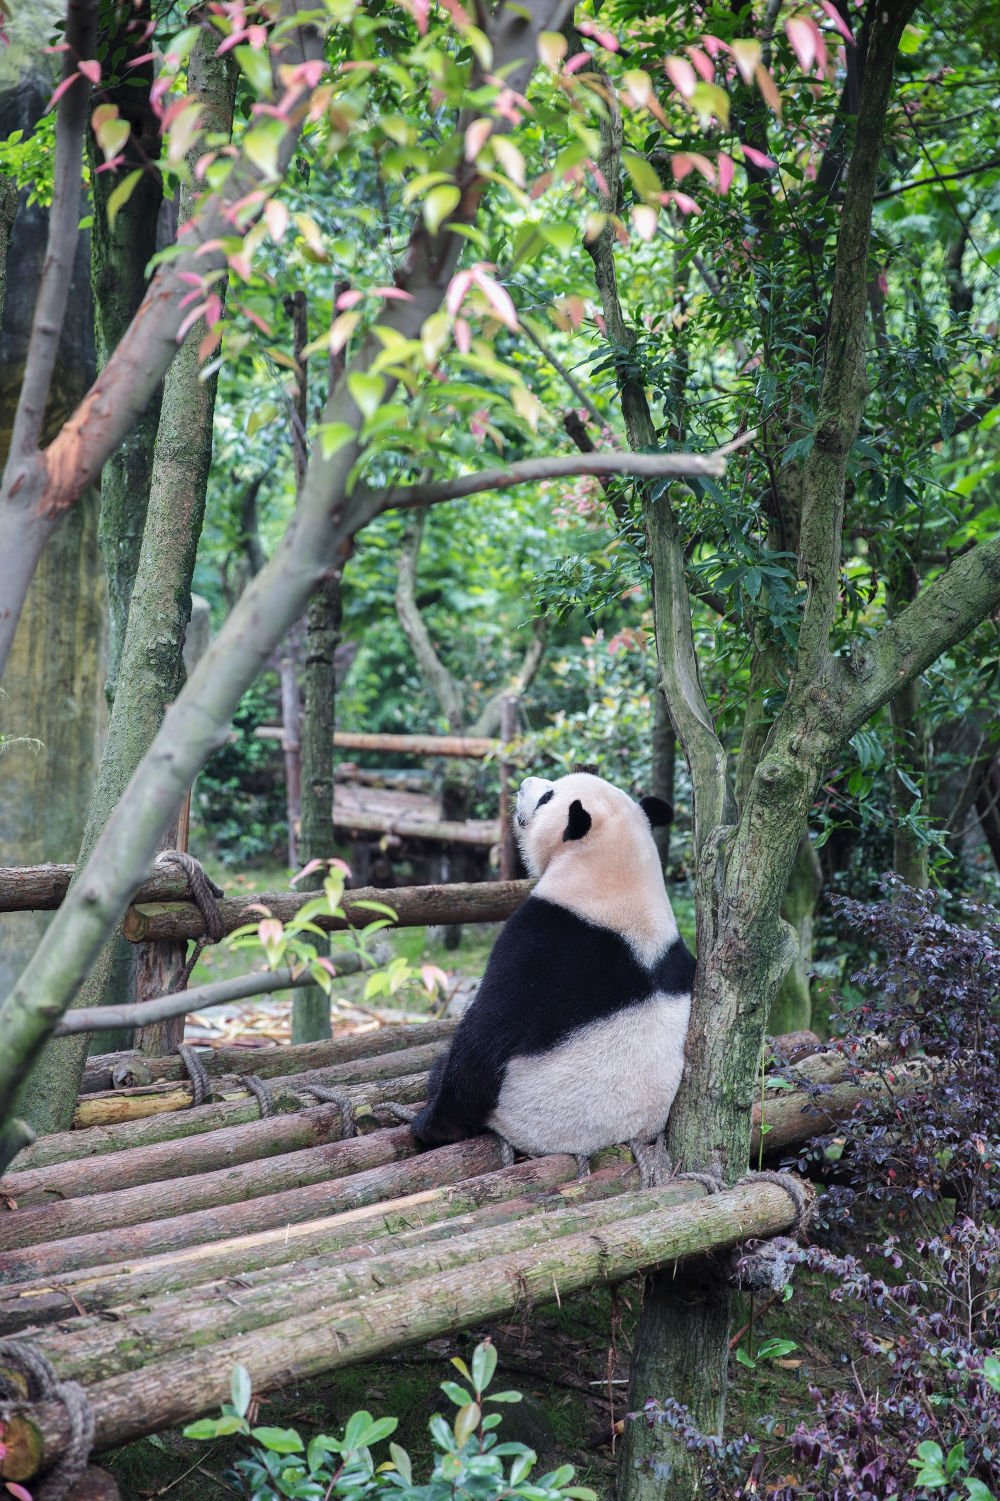 Xiongmao (熊猫) - Panda